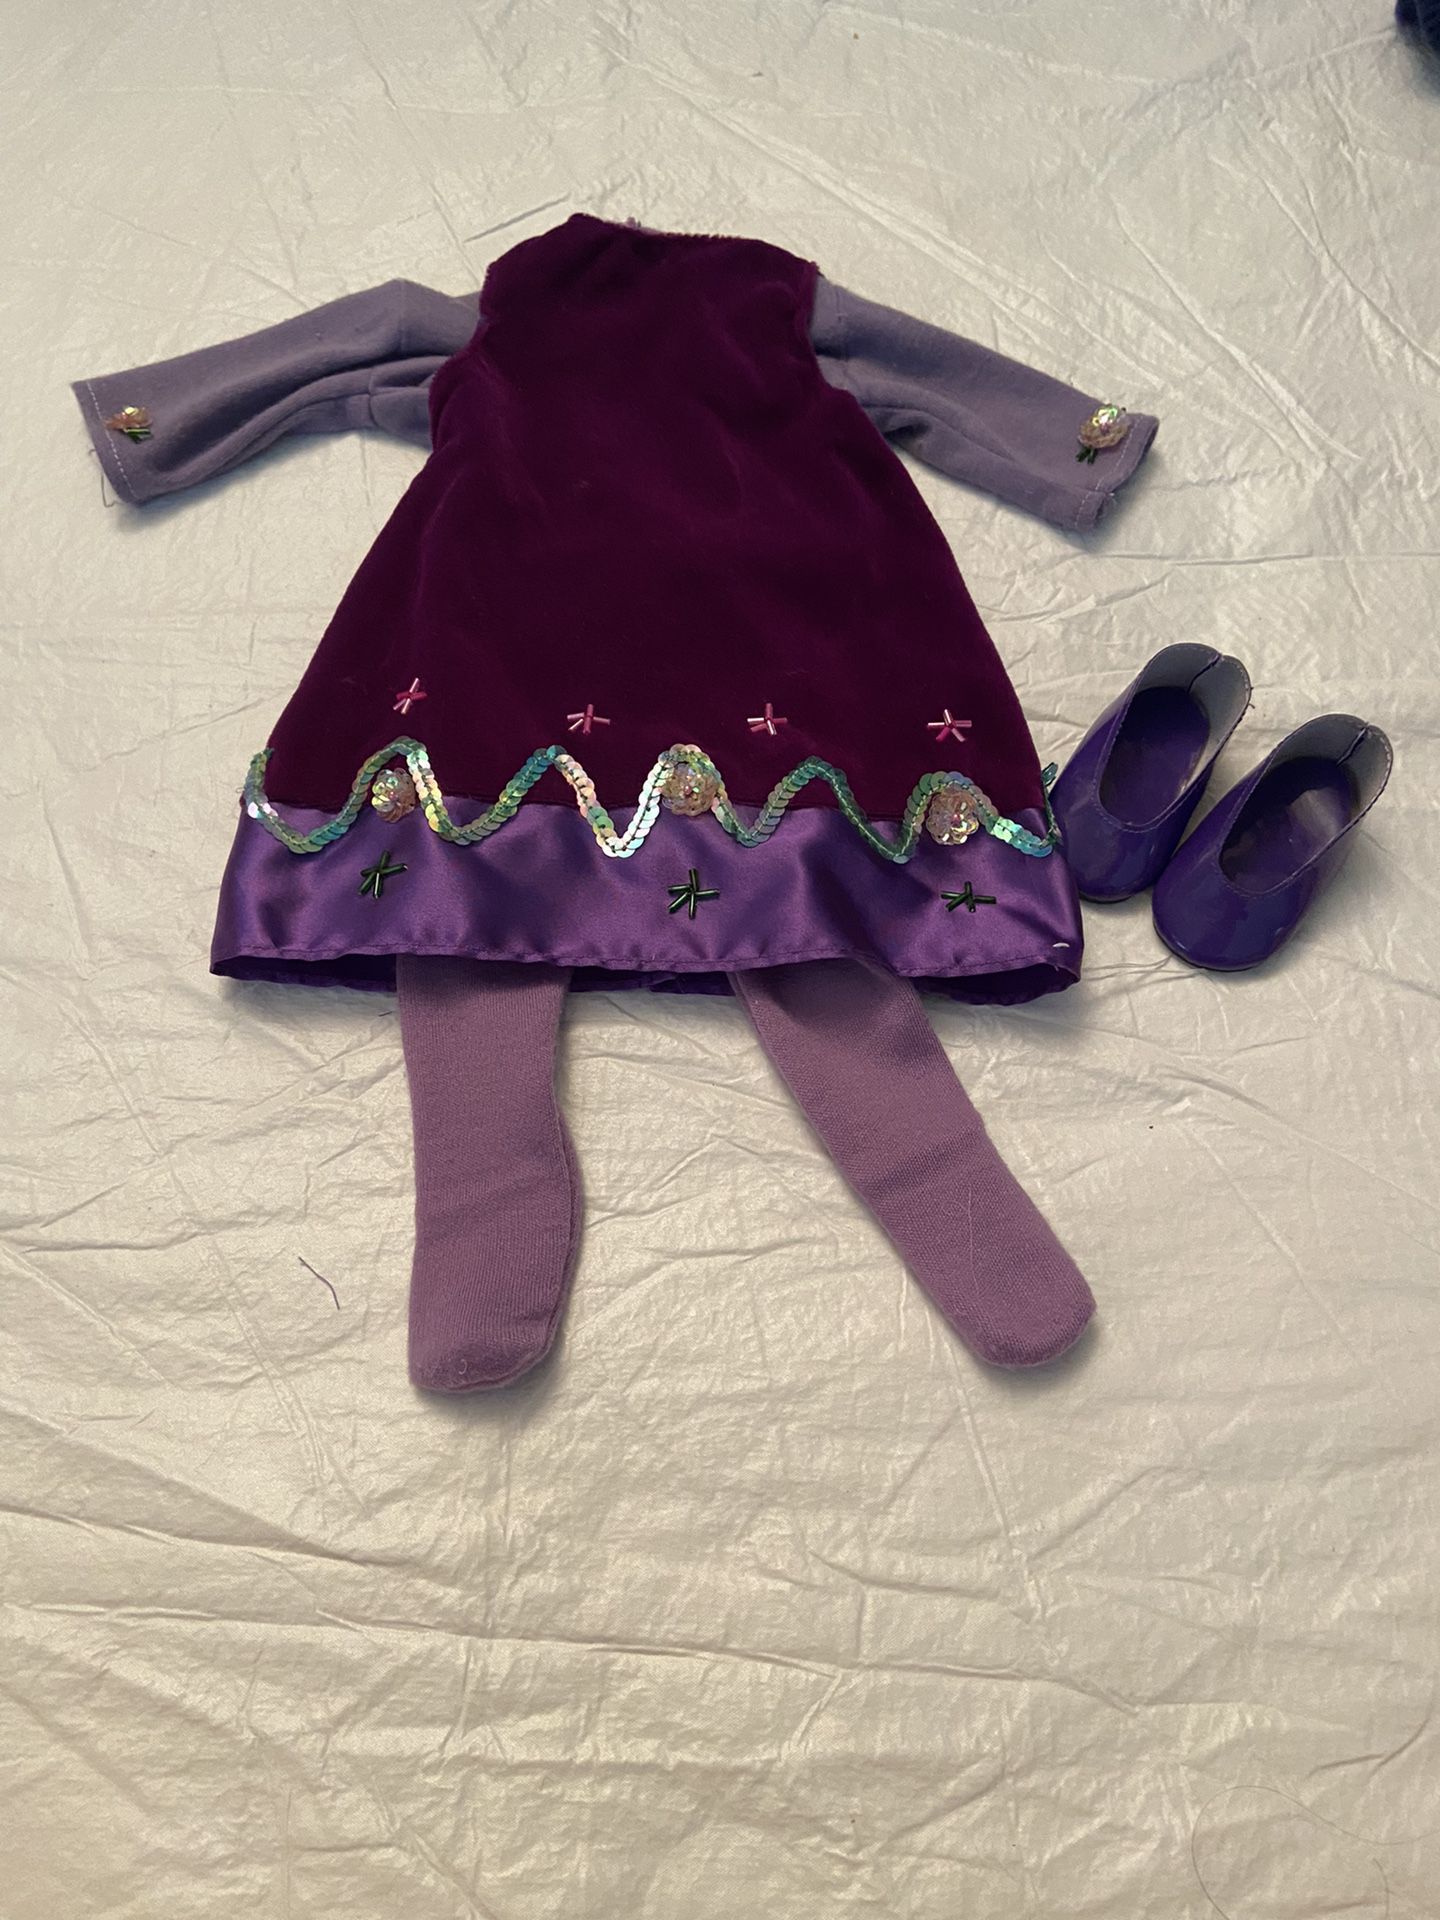 American girl doll purple velvet dress